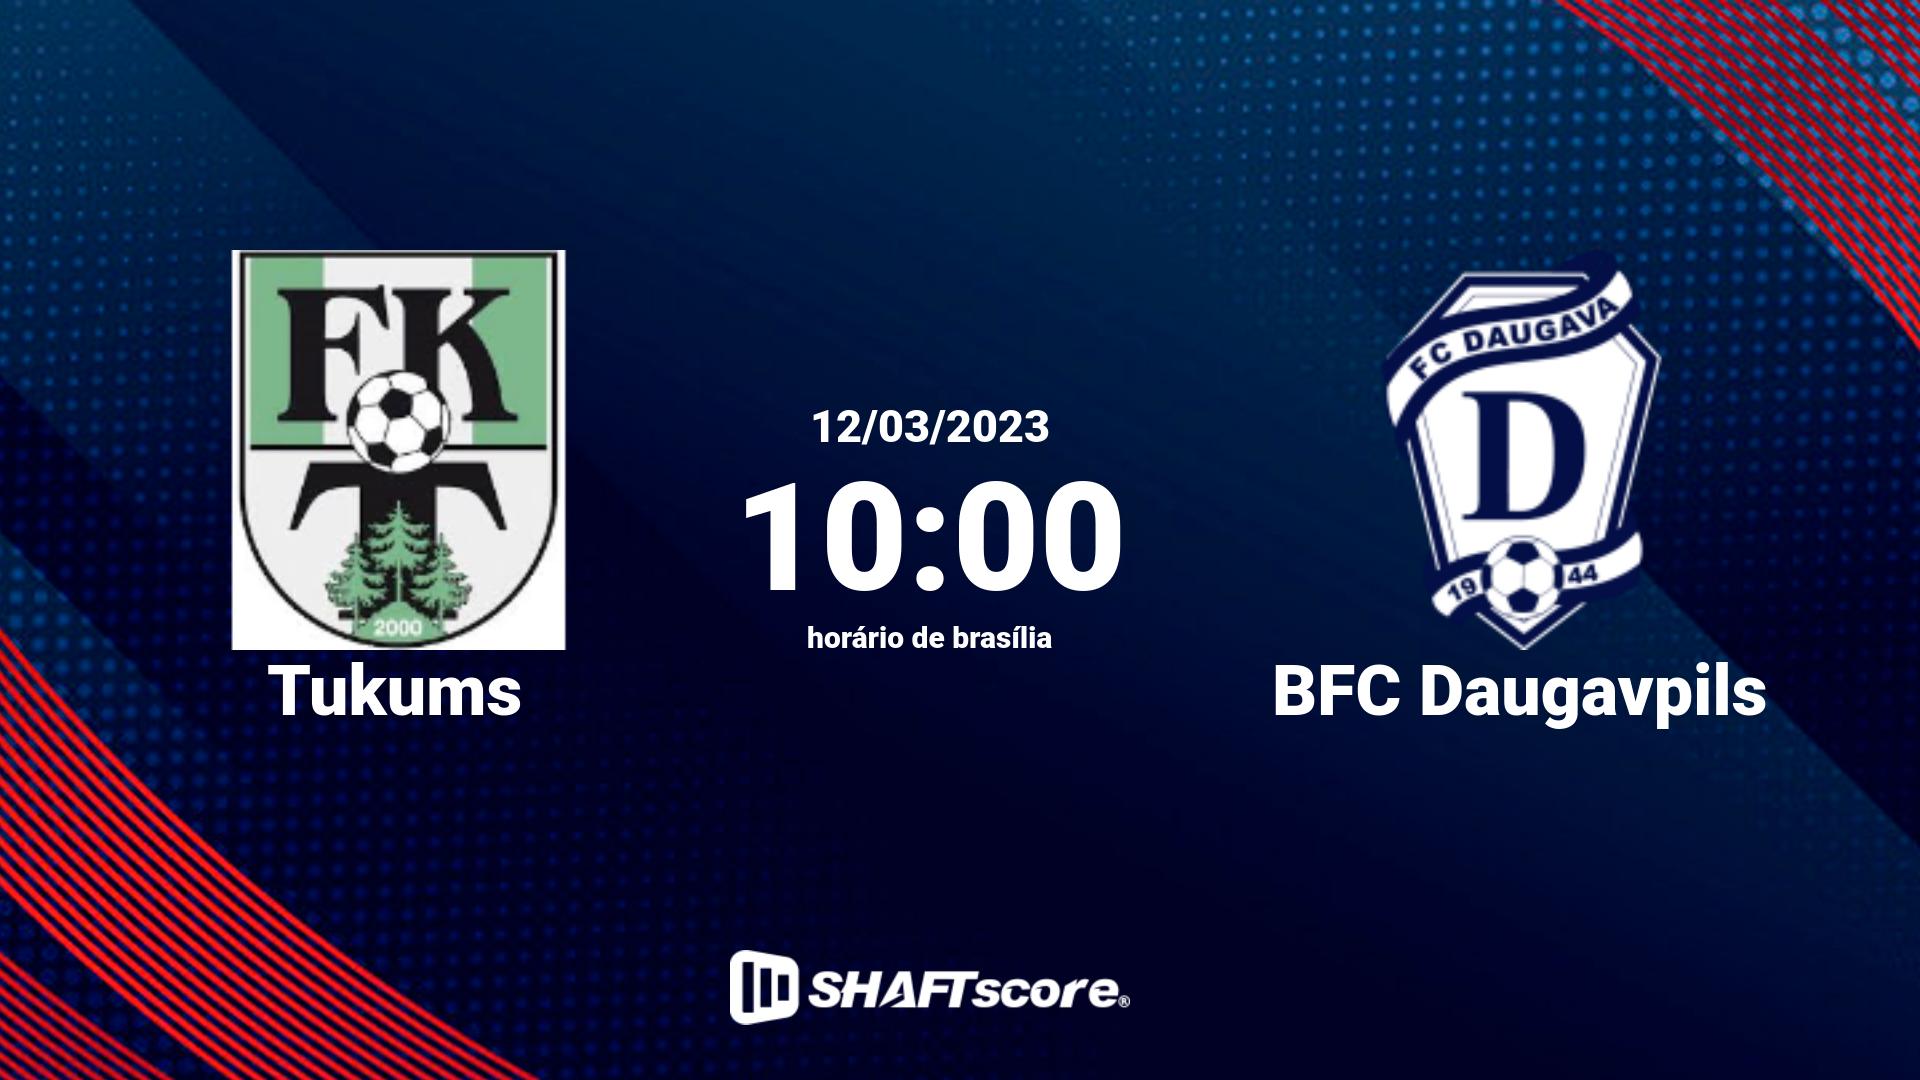 Estatísticas do jogo Tukums vs BFC Daugavpils 12.03 10:00